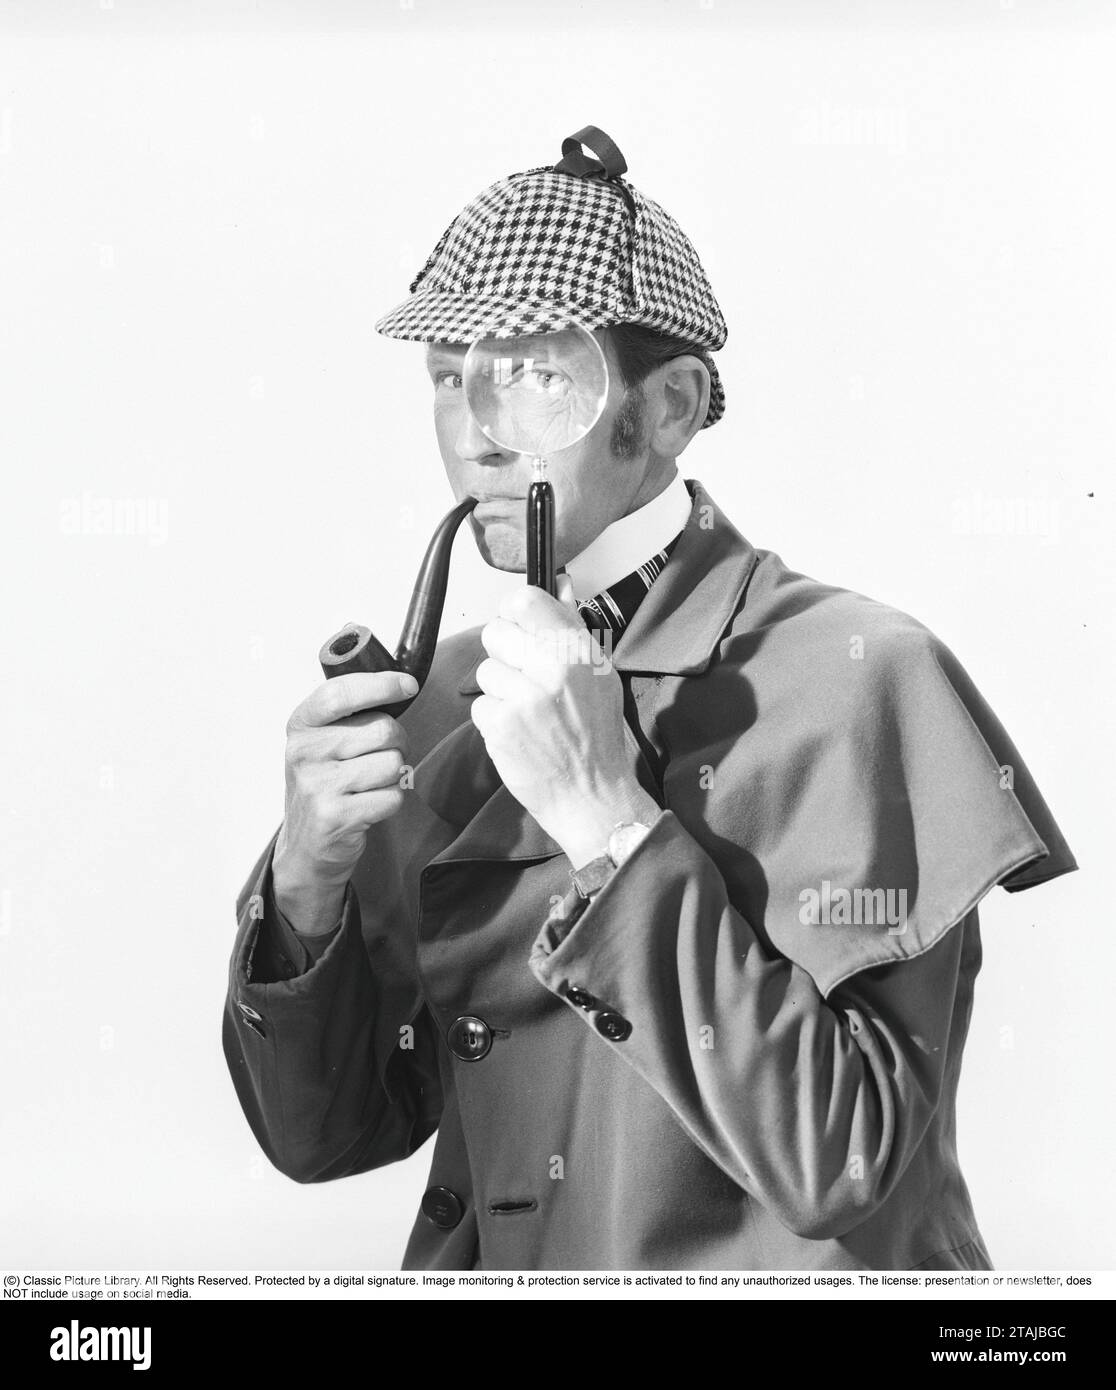 Fare il detective. Un uomo vestito con i vestiti tipici mentre il famoso detective fittizio Sherlock Holmes guarda la macchina fotografica attraverso una lente di ingrandimento. Foto Stock